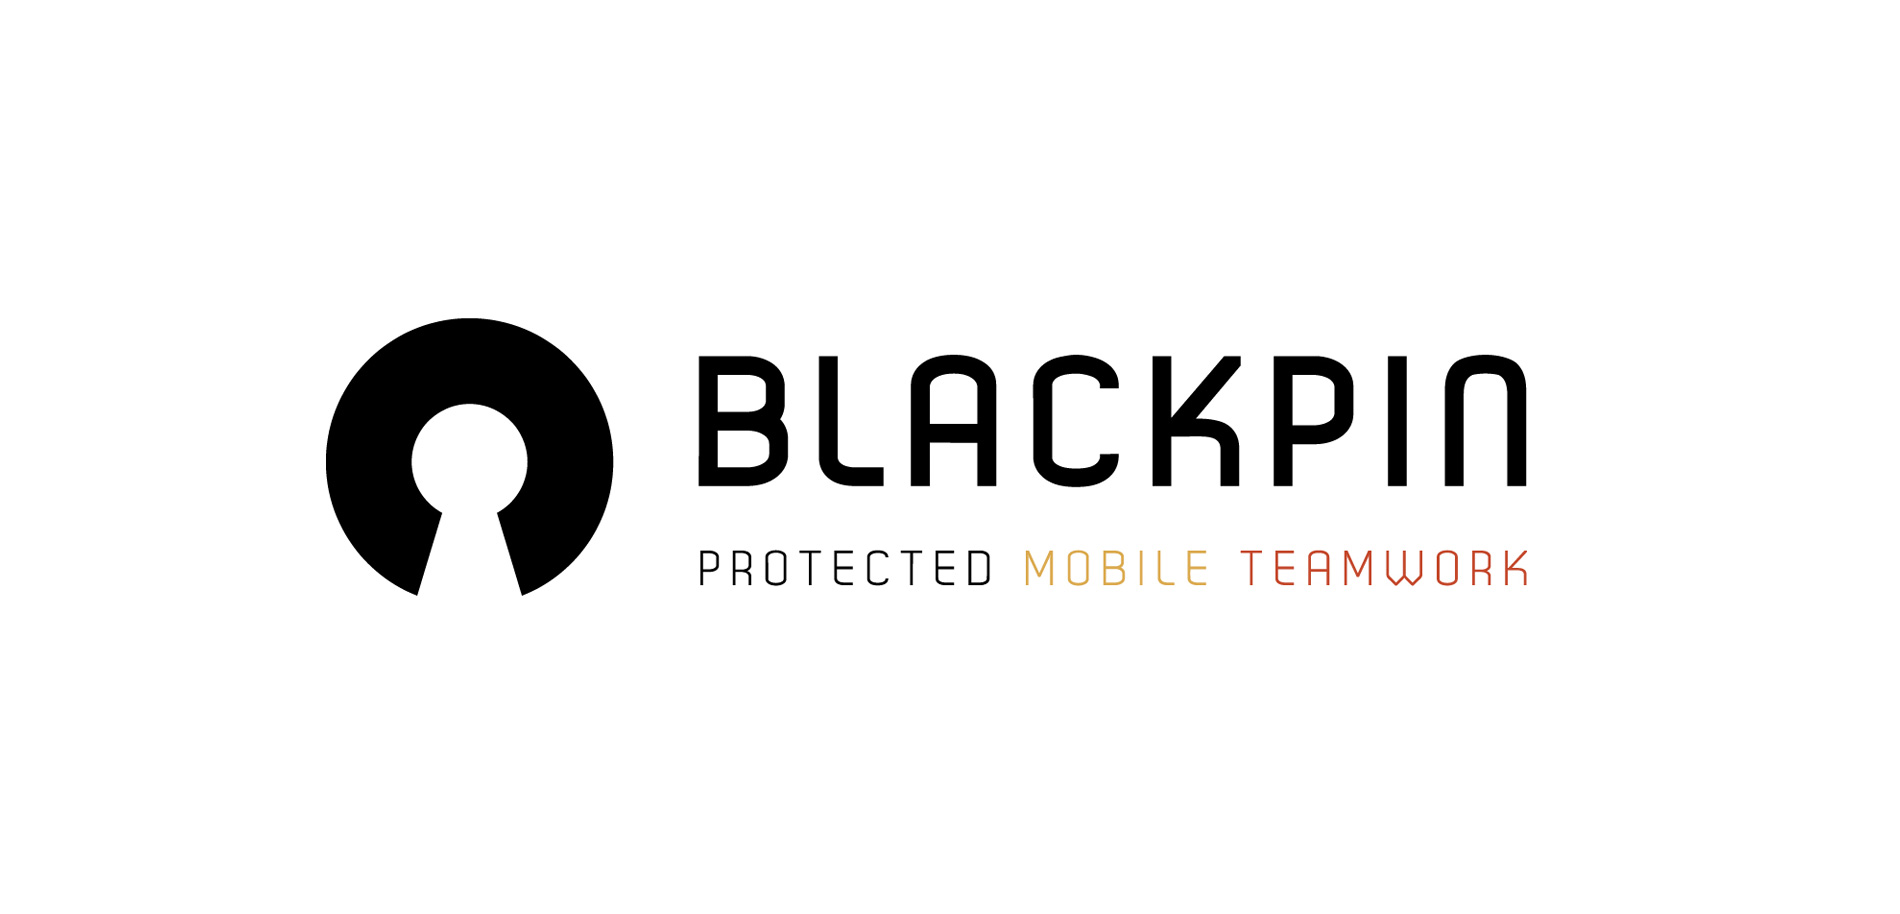 Das Logo von Blackpin mit dem stilisierten Schlüsselloch als Bildmarke und zum Corporate Design passenden Farbakzent.